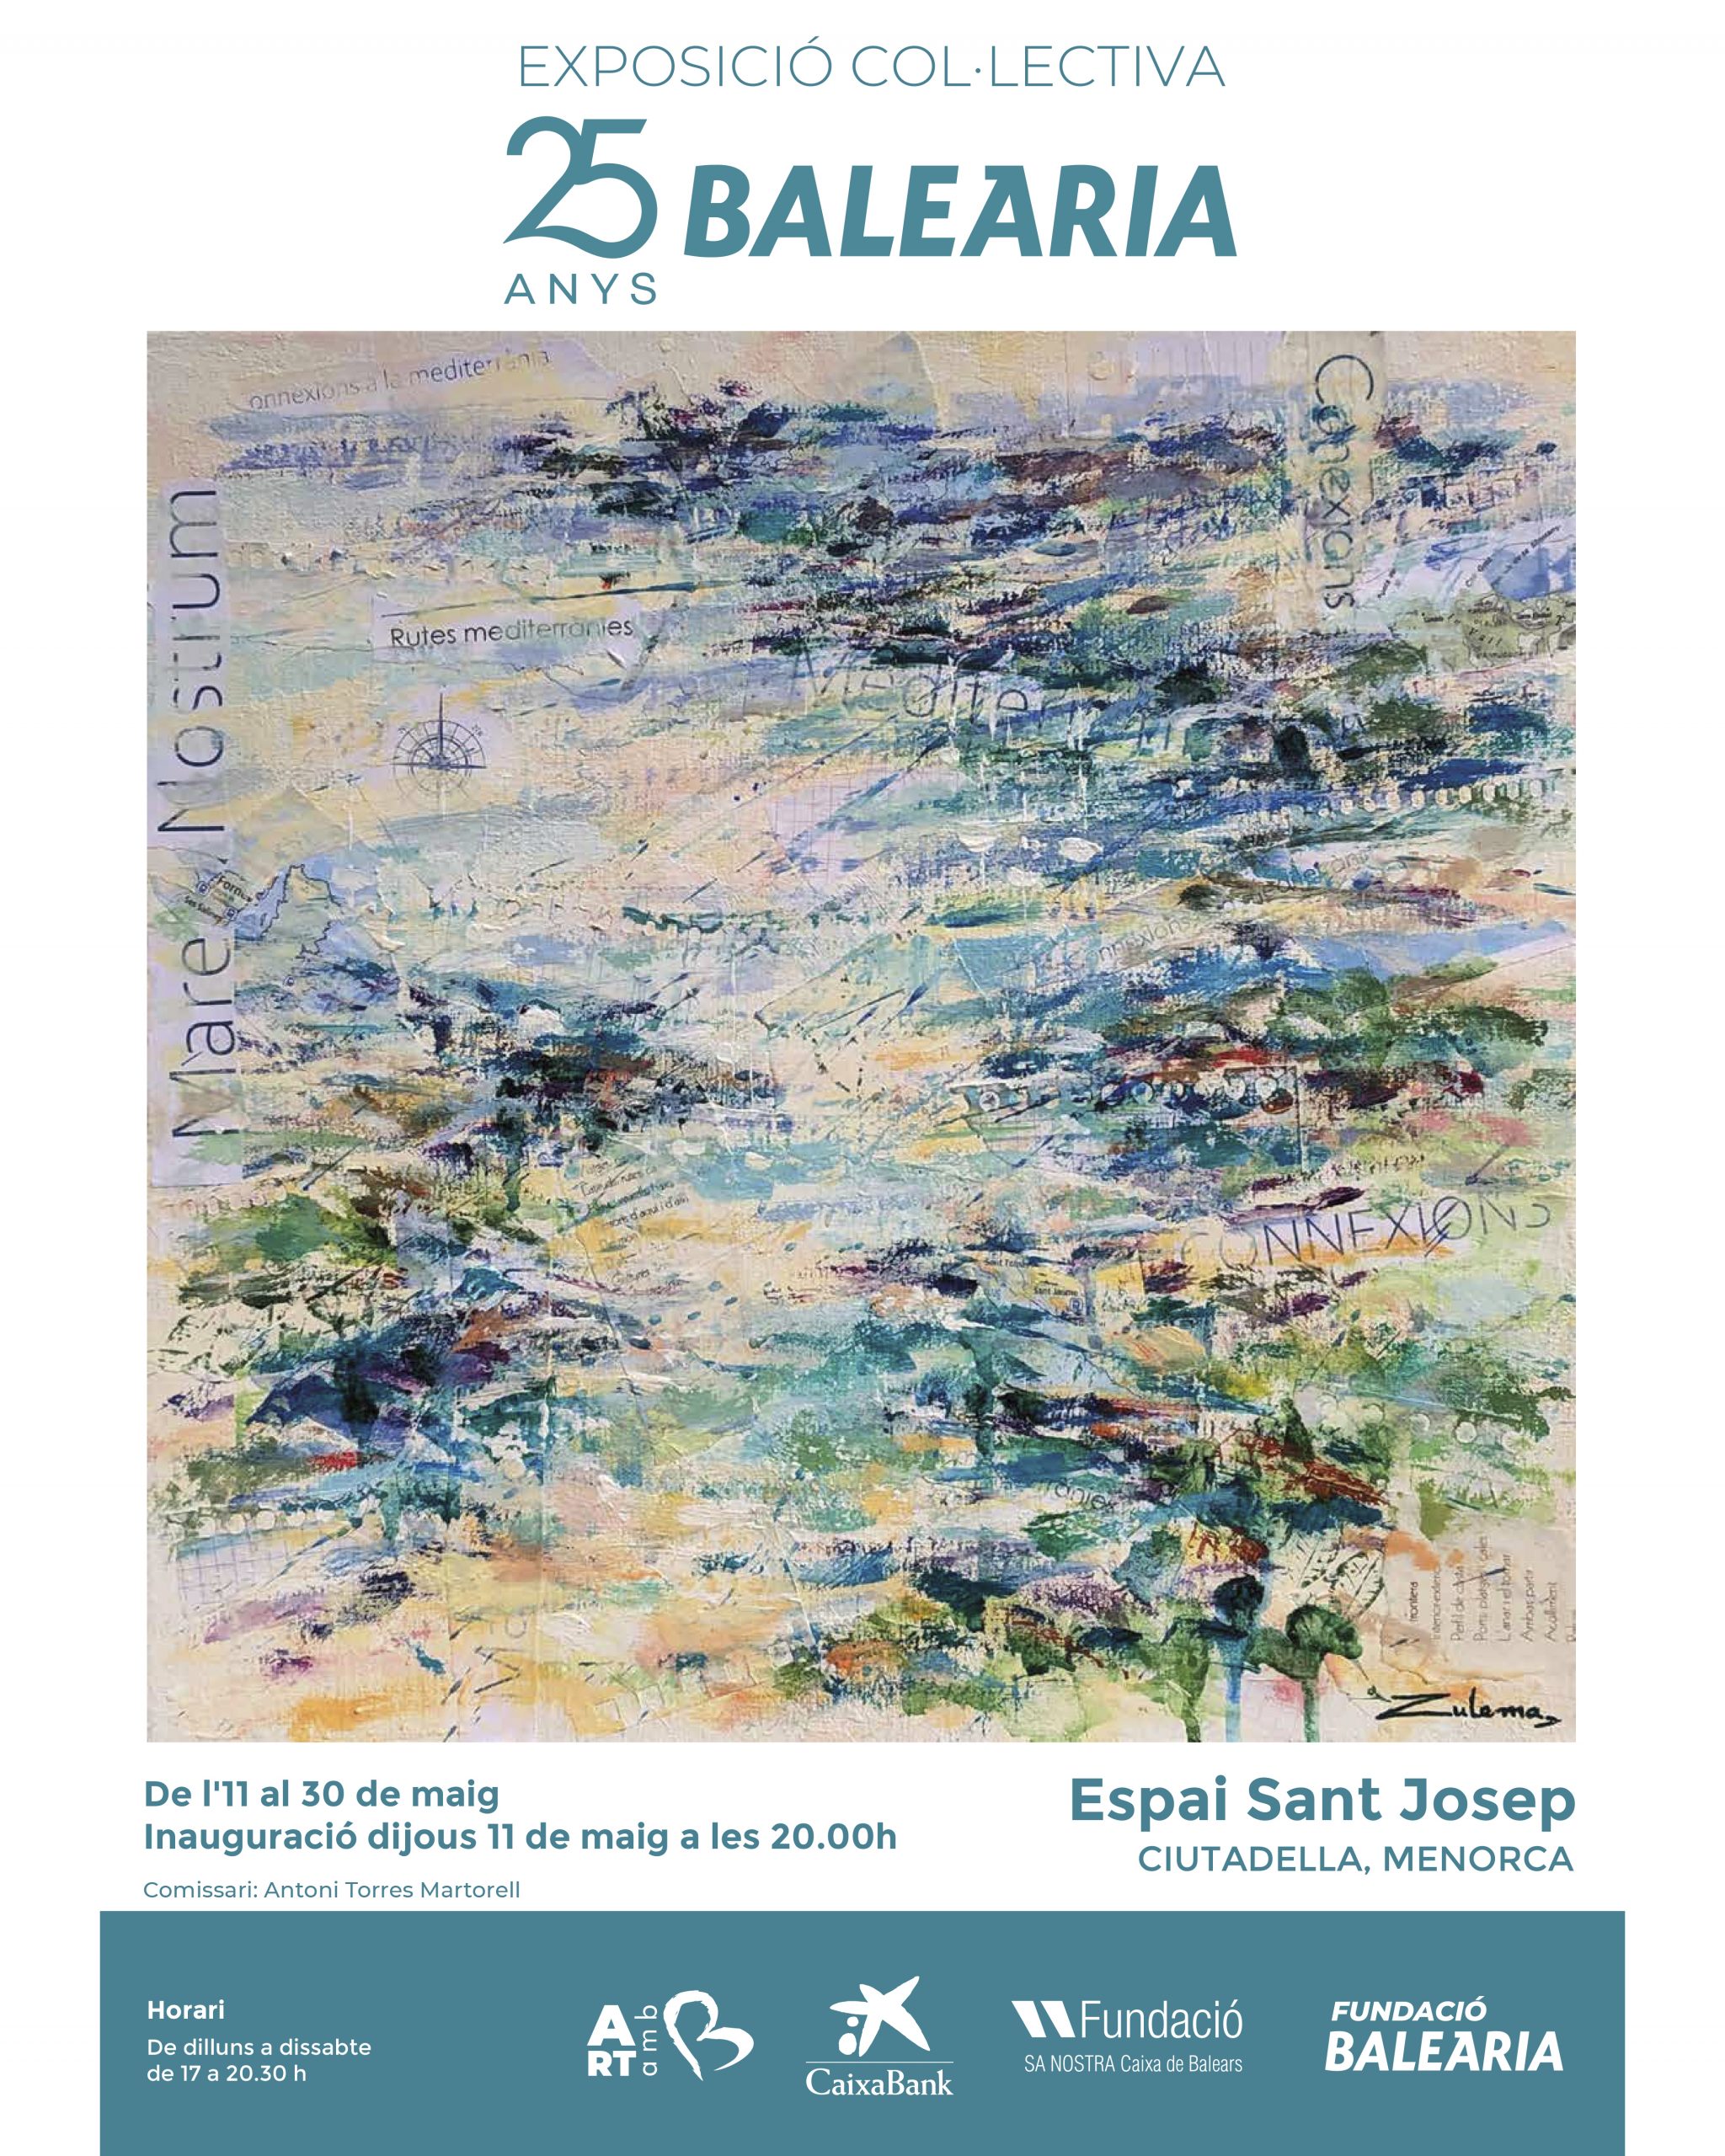 La Fundació Baleària inaugura a Ciutadella l’exposició col·lectiva ’25 anys Baleària’